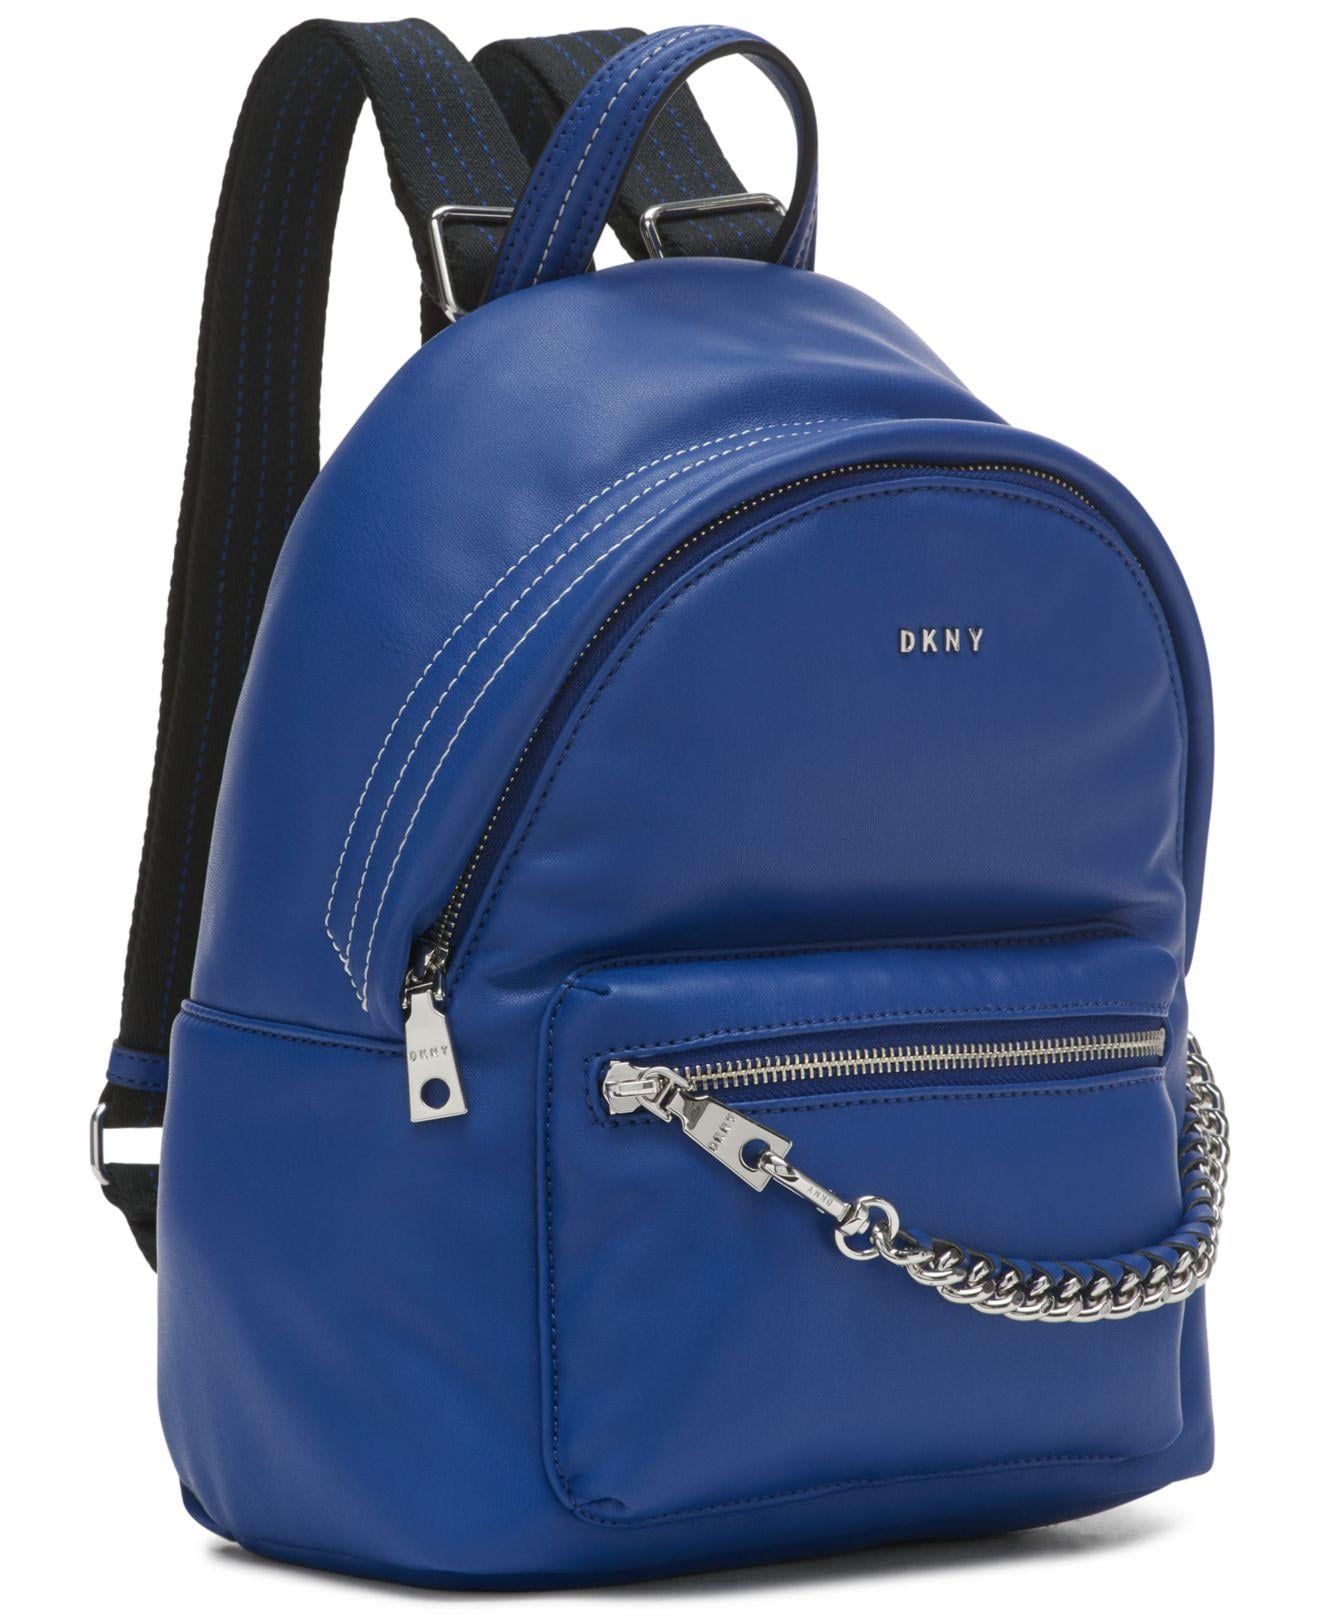 DKNY Elissa Small Shoulder Bag - Macy's